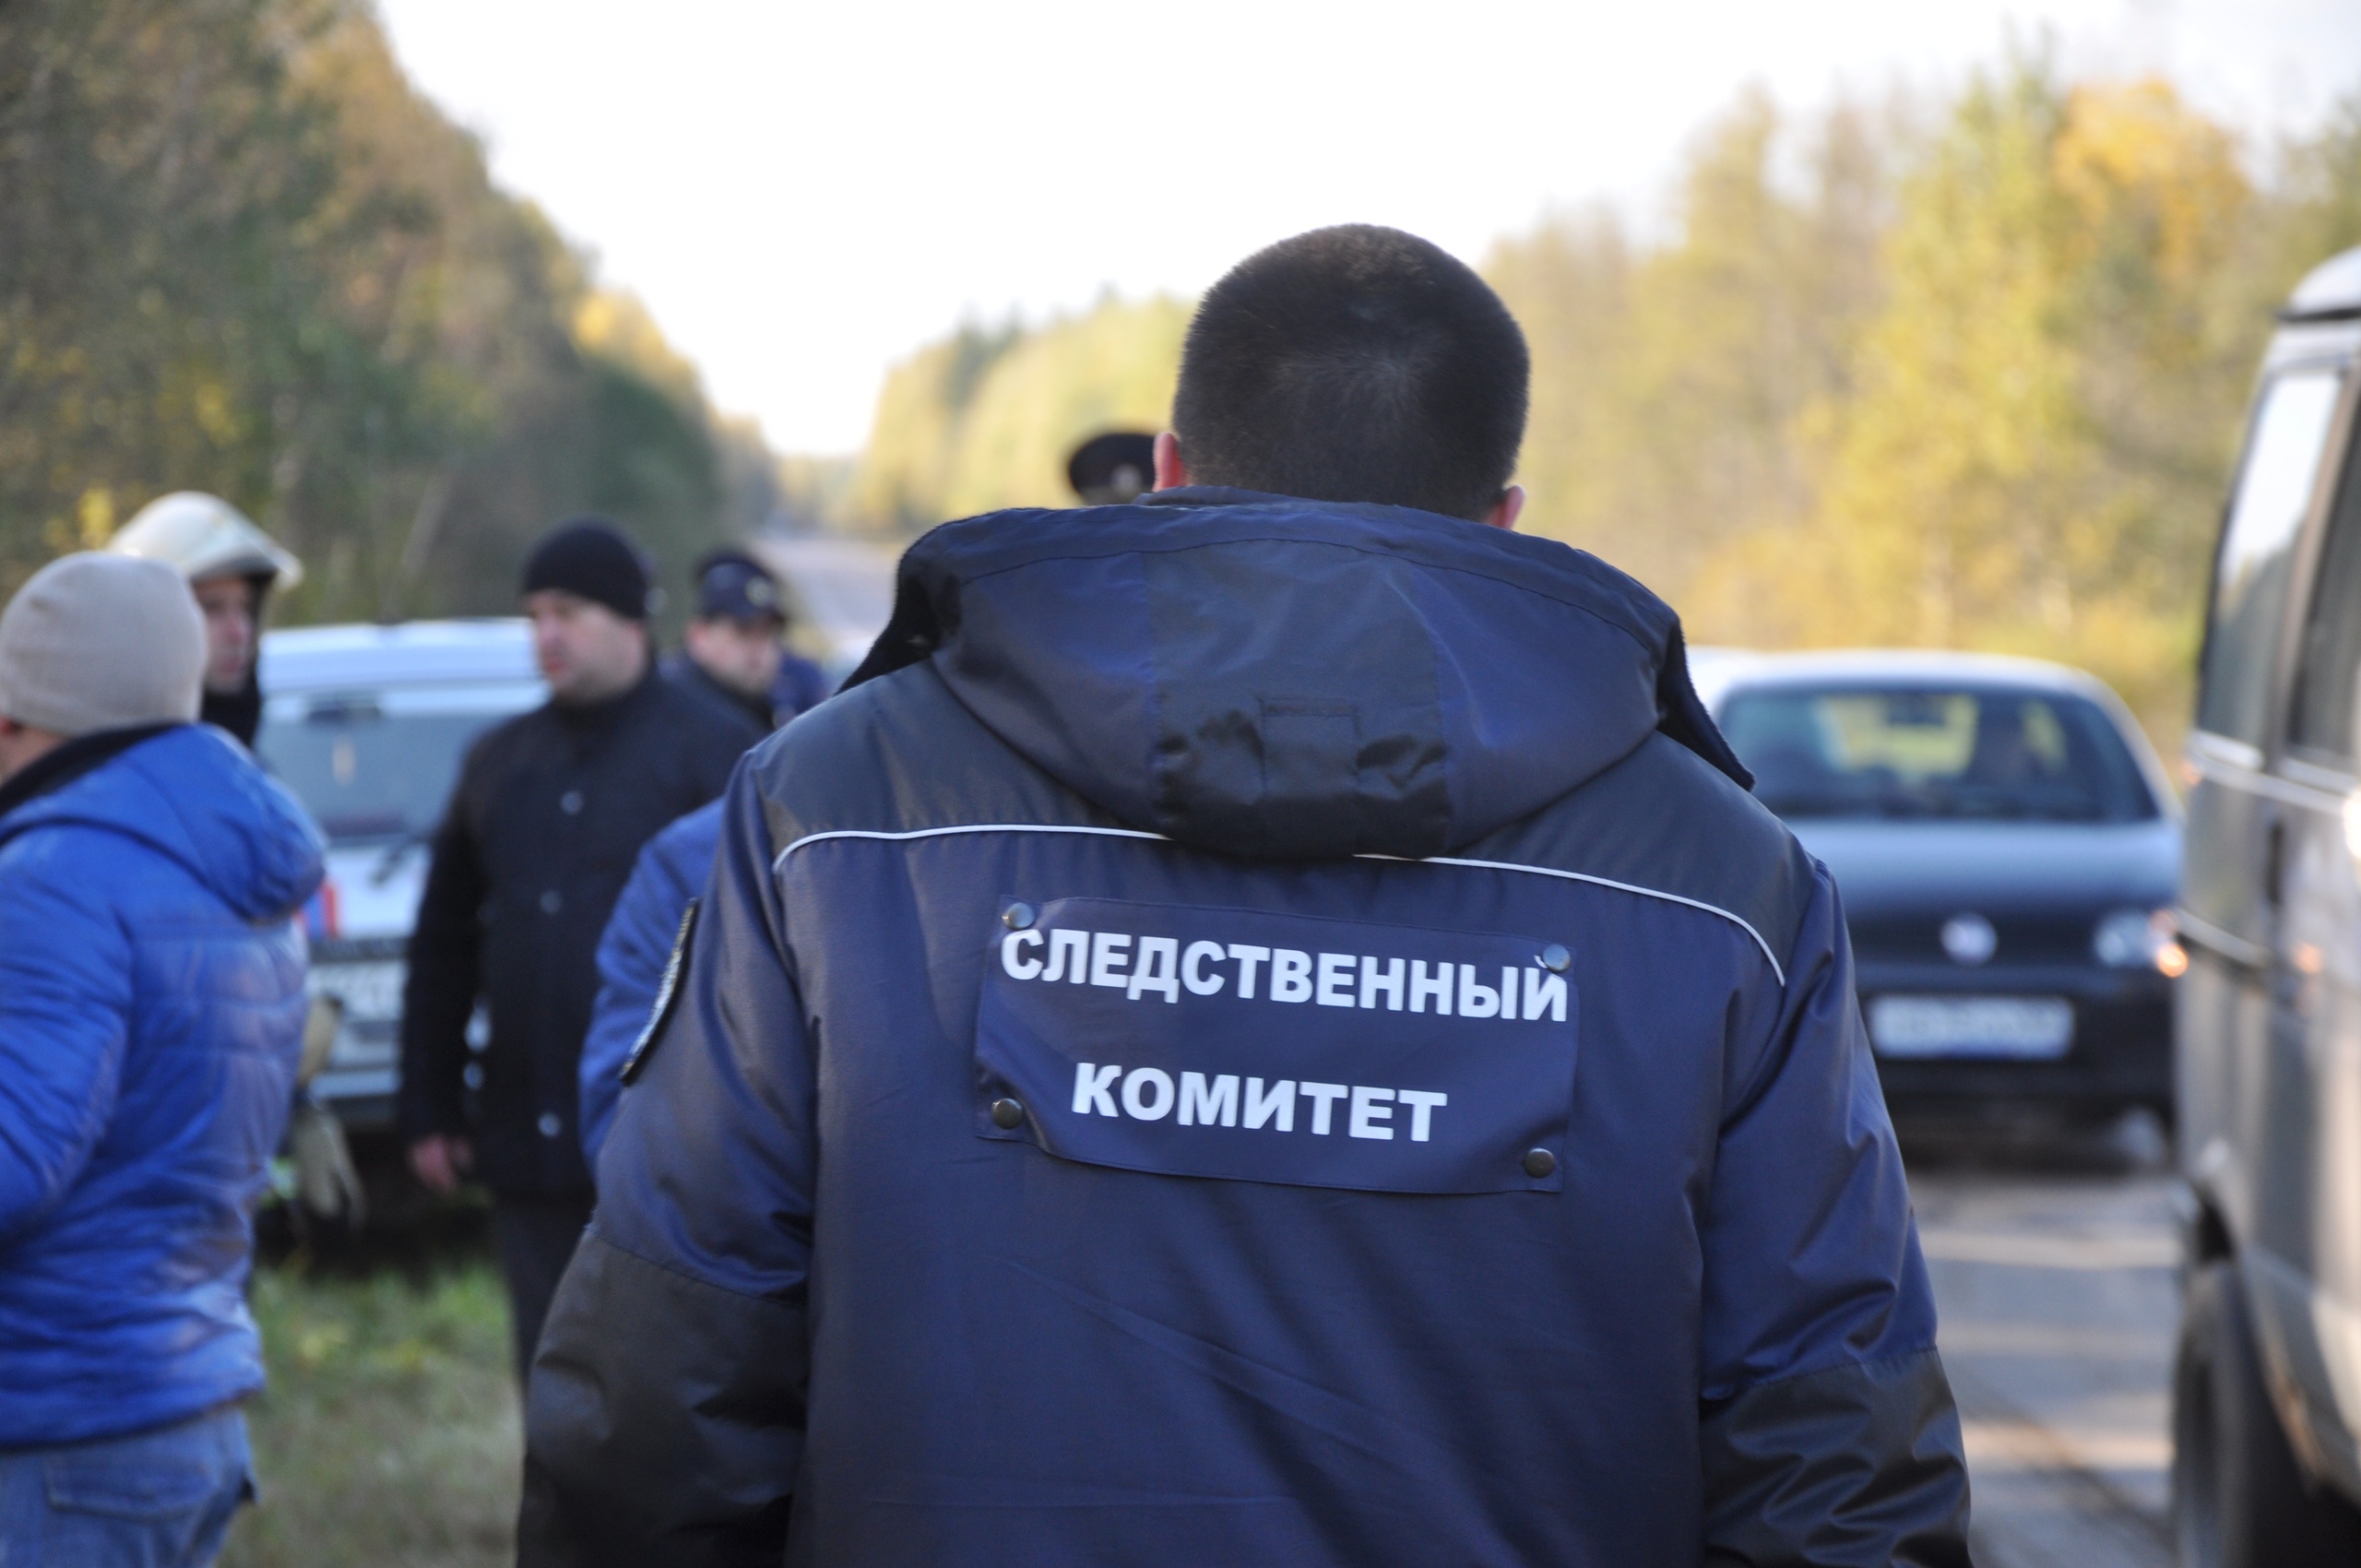 Тверские следователи, работая над делом об убийстве Михаила Круга, раскрыли еще четыре убийства